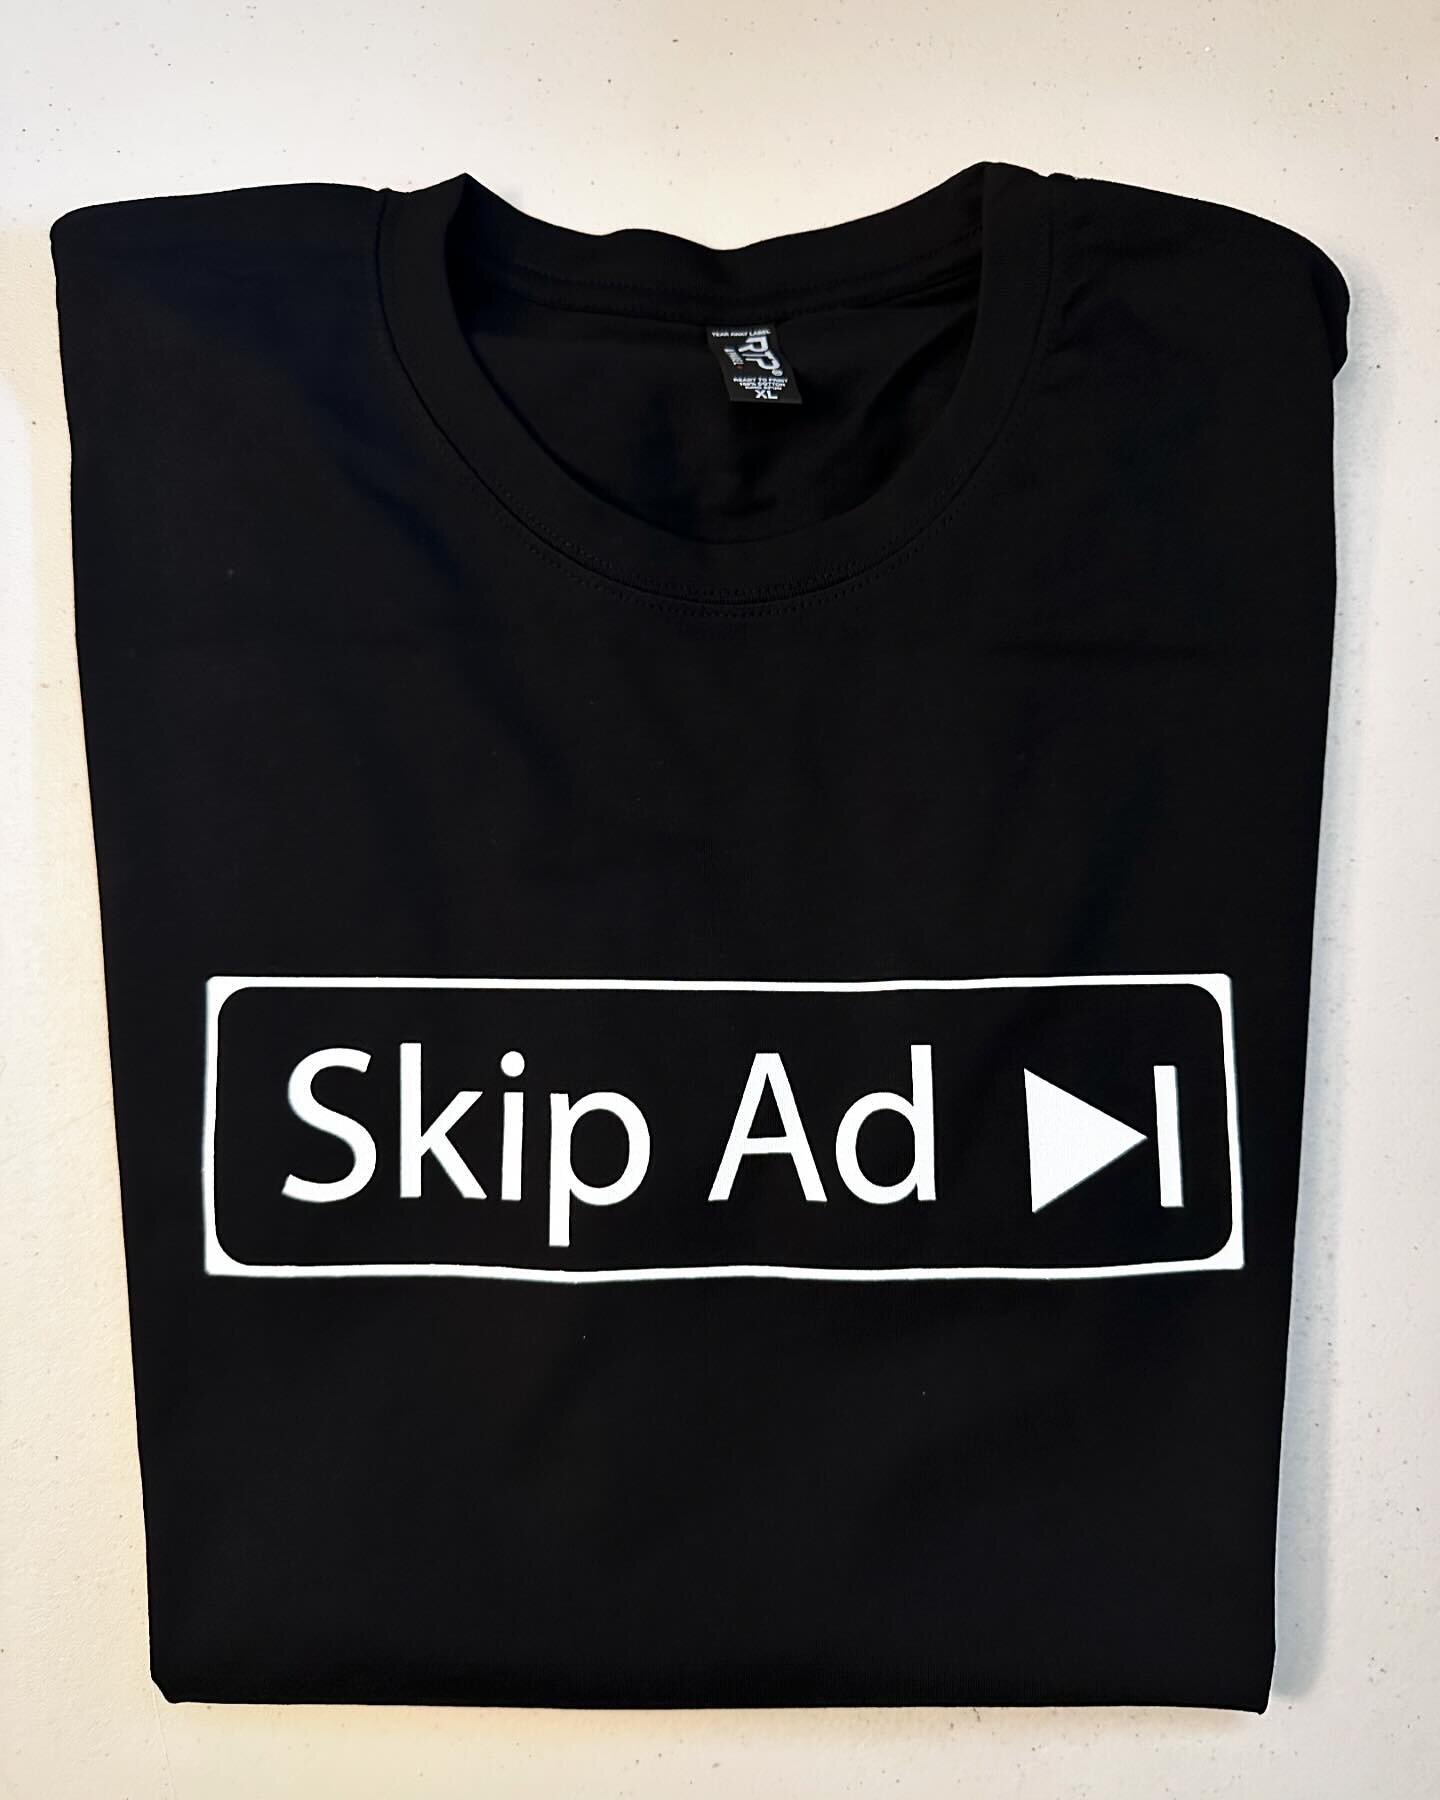 Skip Ad
Black Short Sleeve Tee 
.
#smallbusiness #skipad #tshirt #tshirtprinting #tshirtstore #tshirtdesign #freeshipping